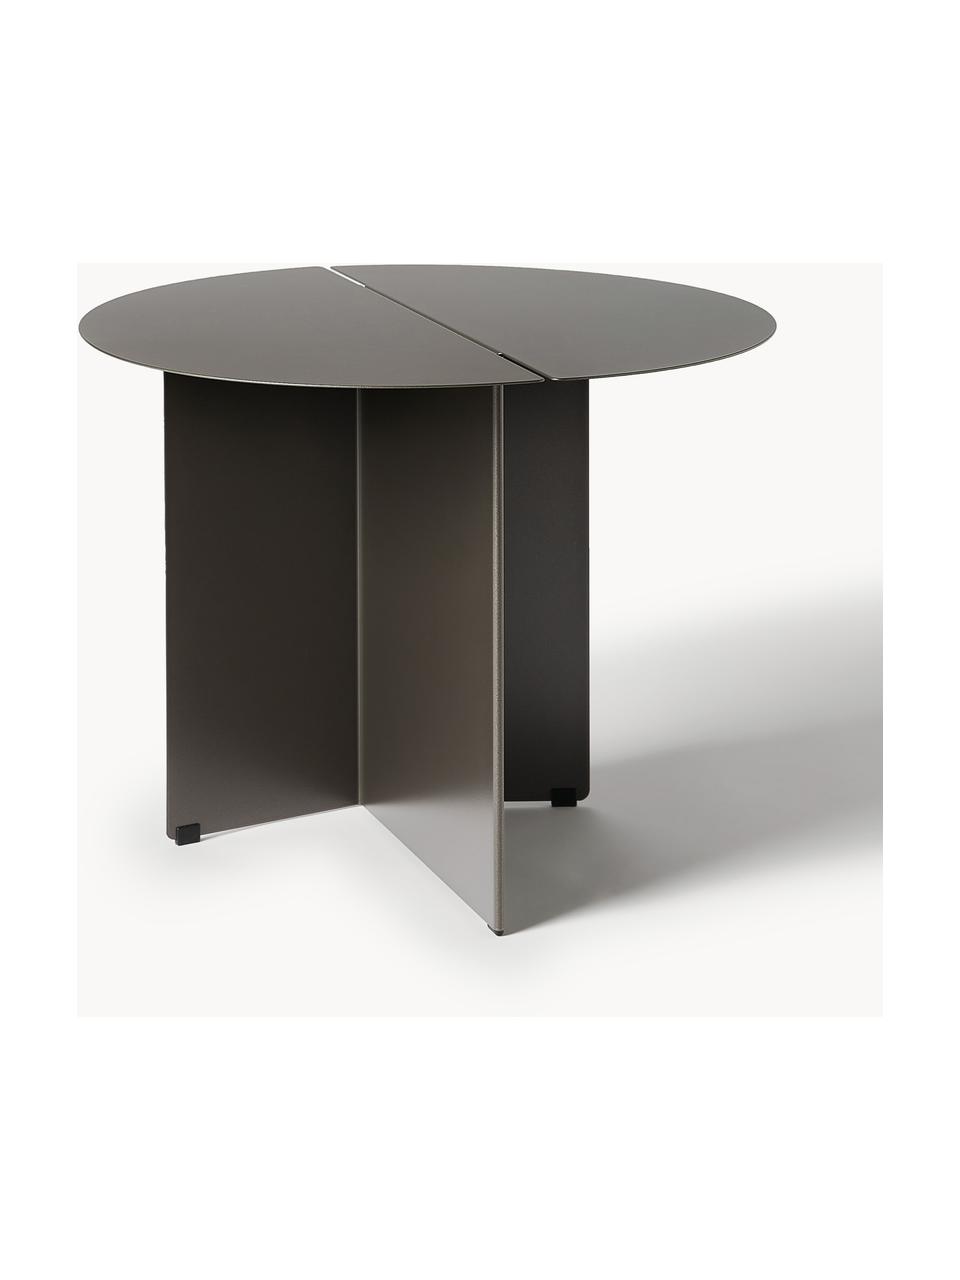 Okrągły stolik pomocniczy z efektem postarzania Oru, Stal szlachetna malowana proszkowo, Antracytowy z efektem postarzania, Ø 50 x W 40 cm